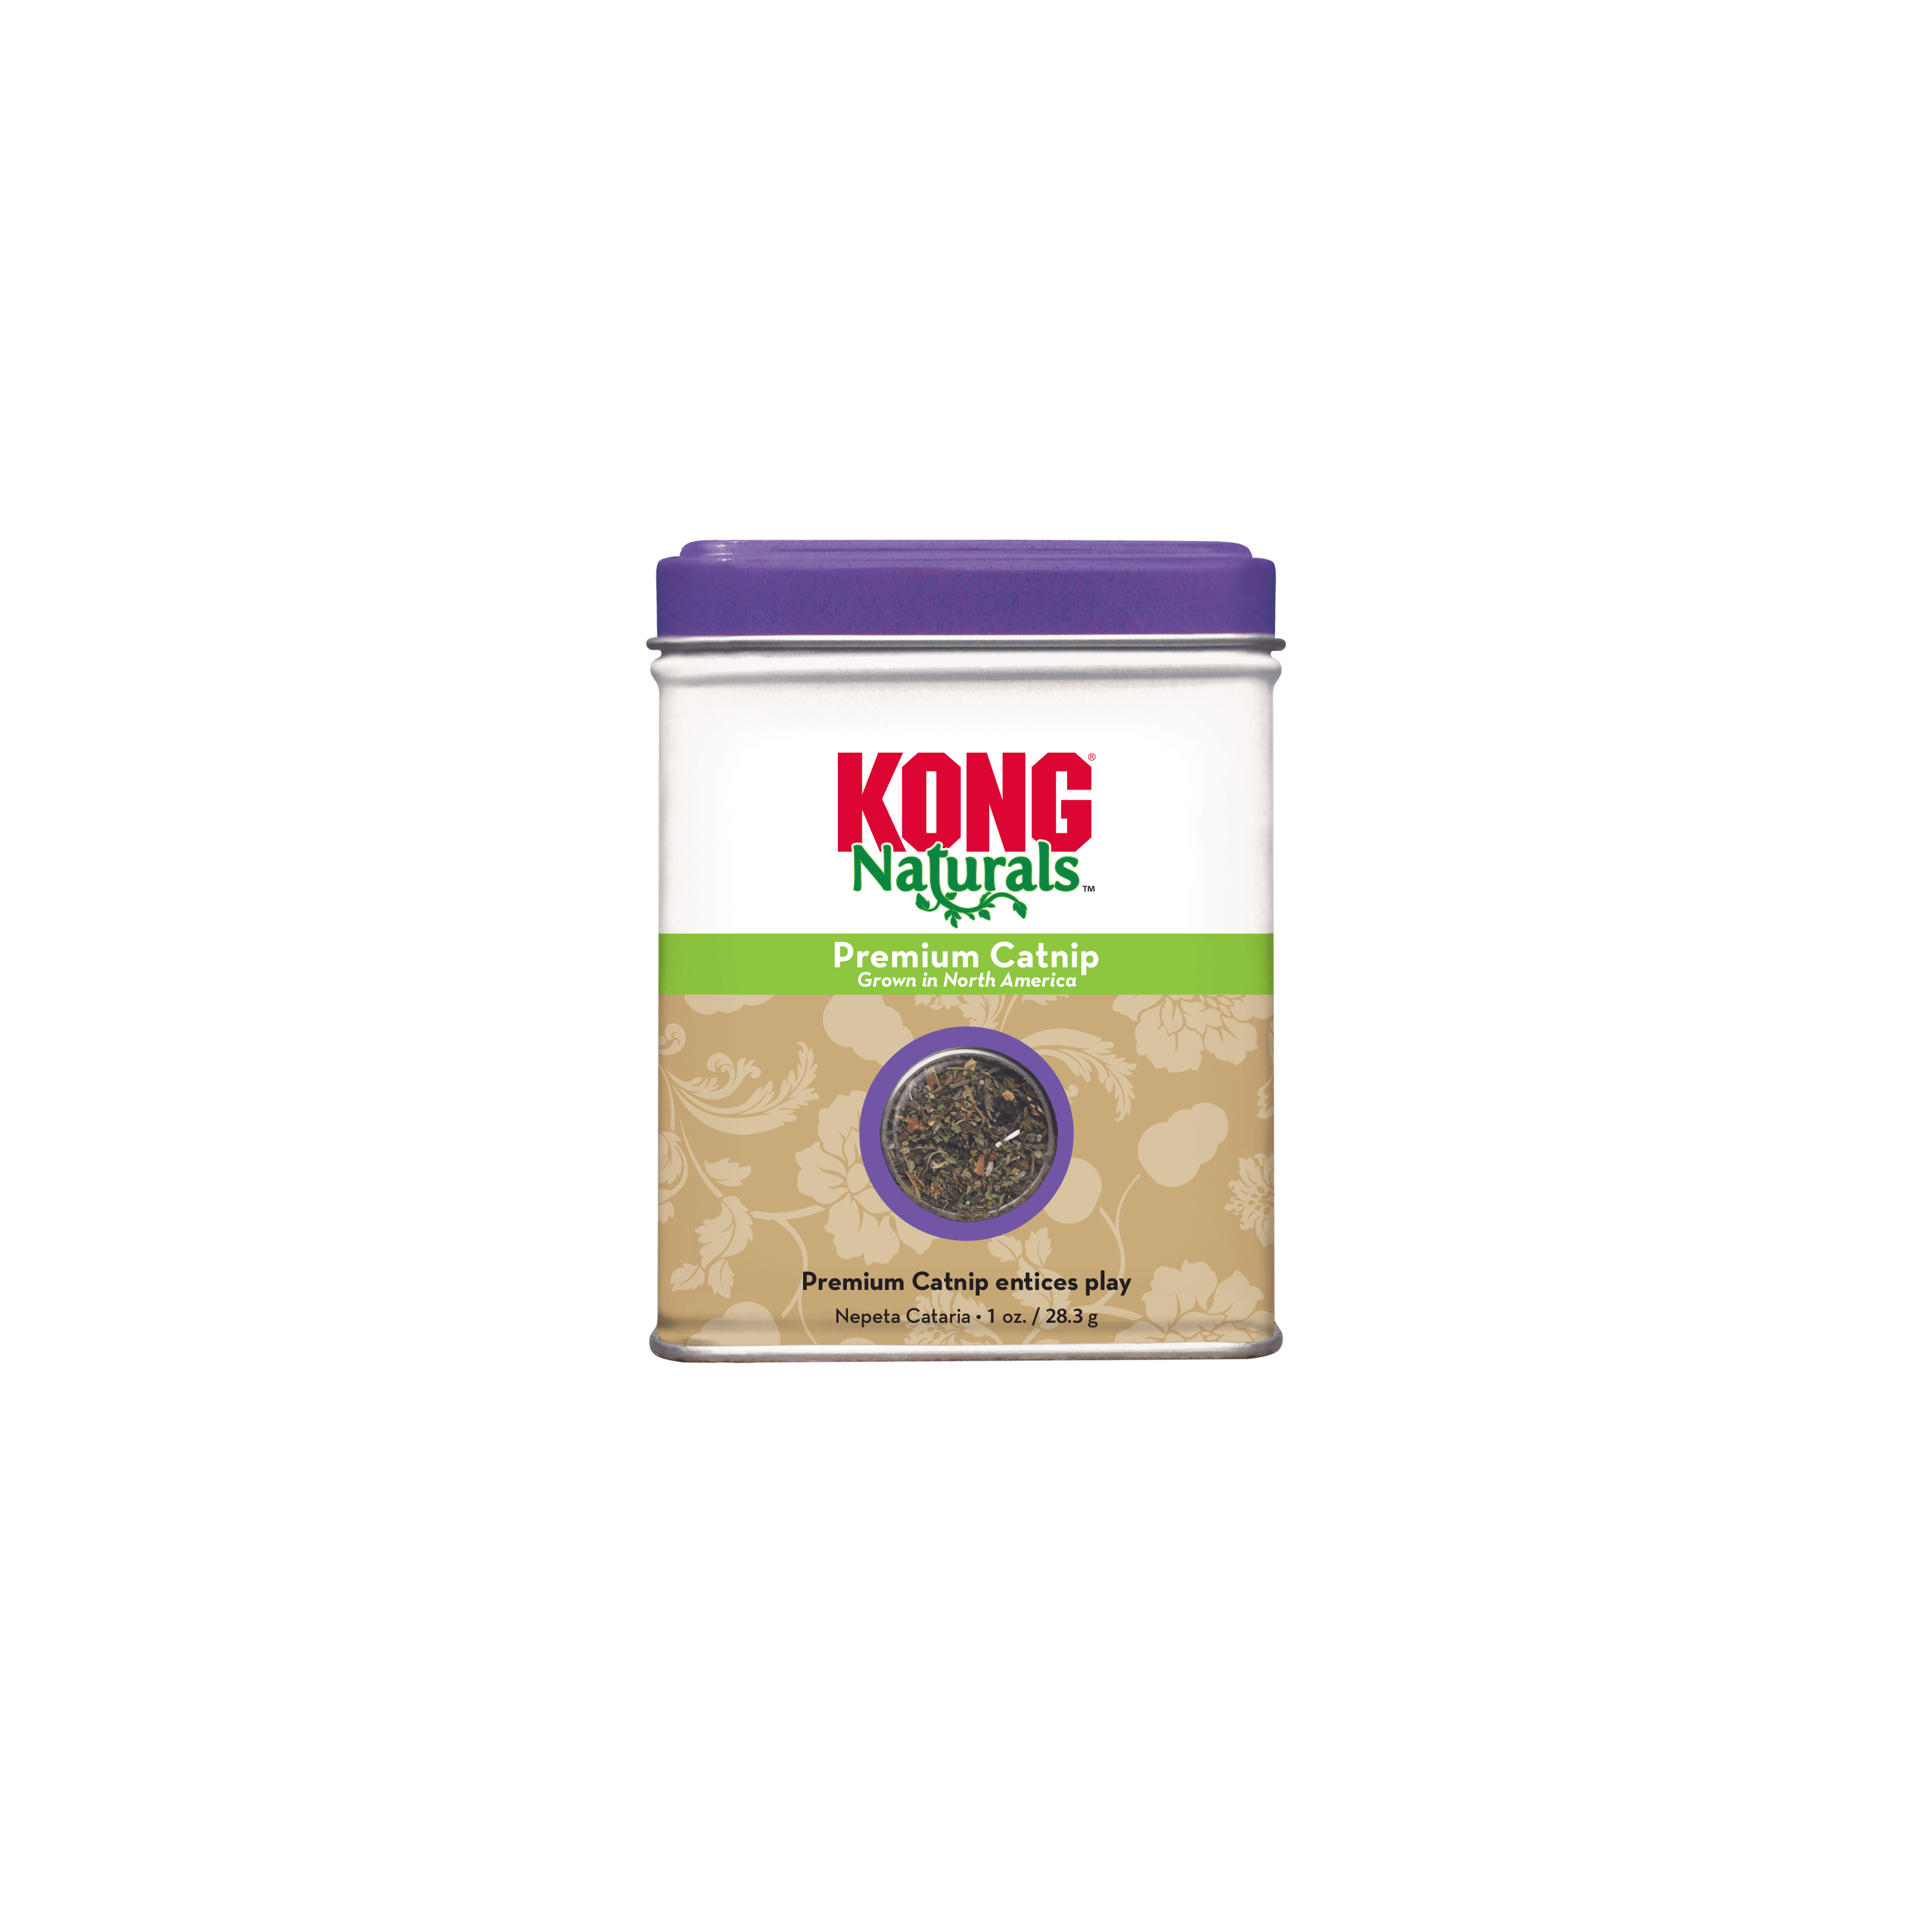 KONG | Naturals Premium Catnip | ARMOR THE POOCH